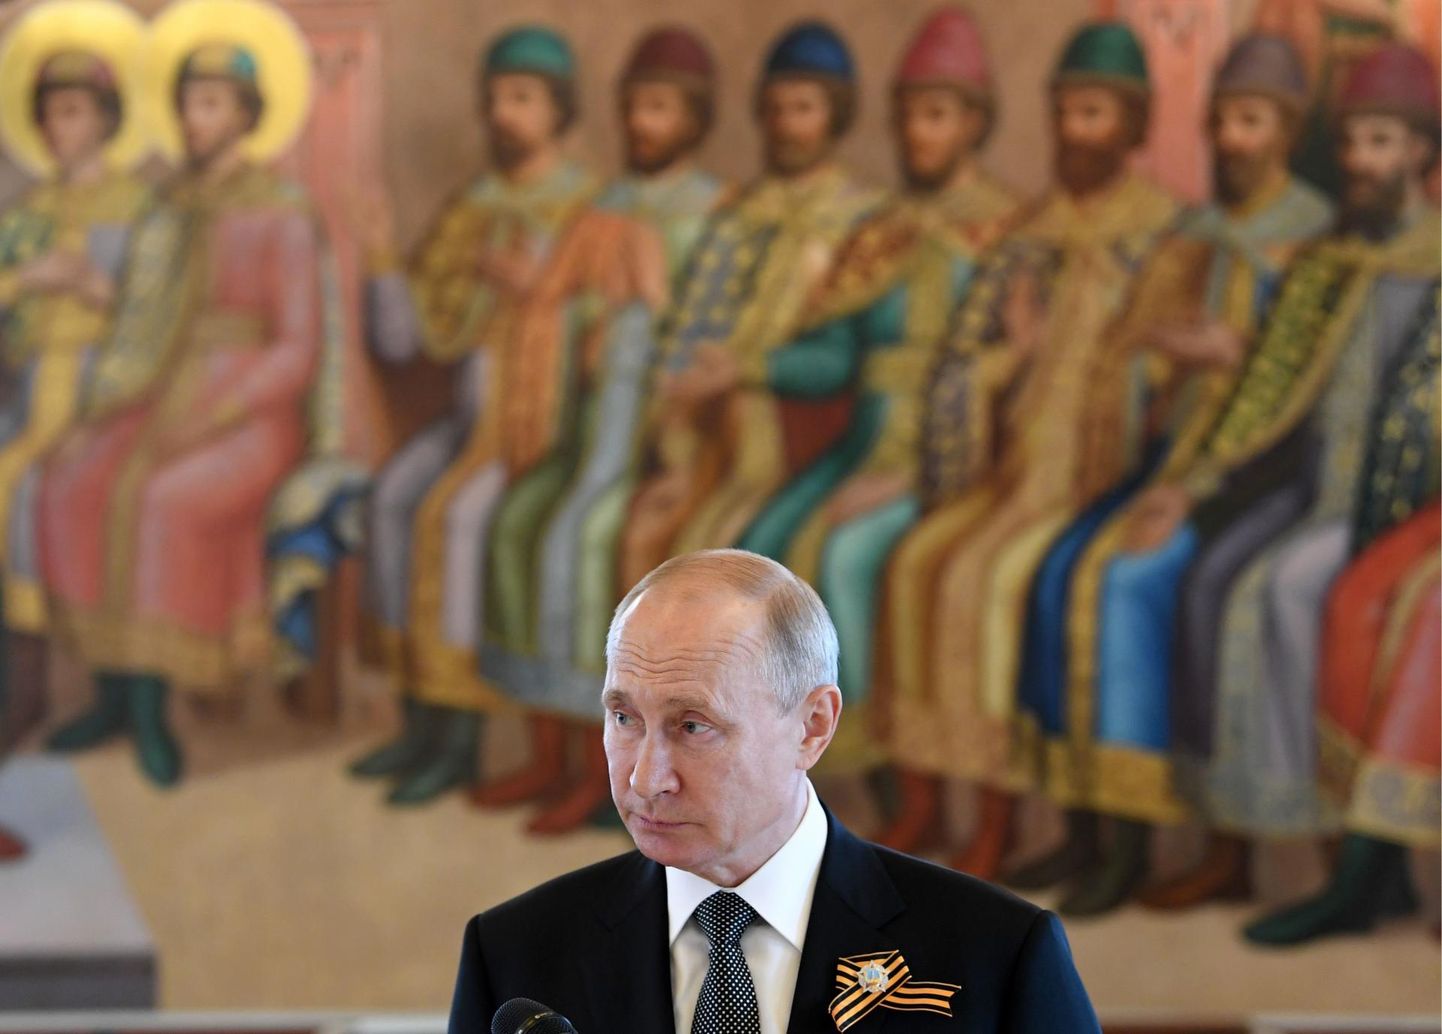 Venemaa president Vladimir Putin kindlustas oma võimuloleku 2036. aastani. 